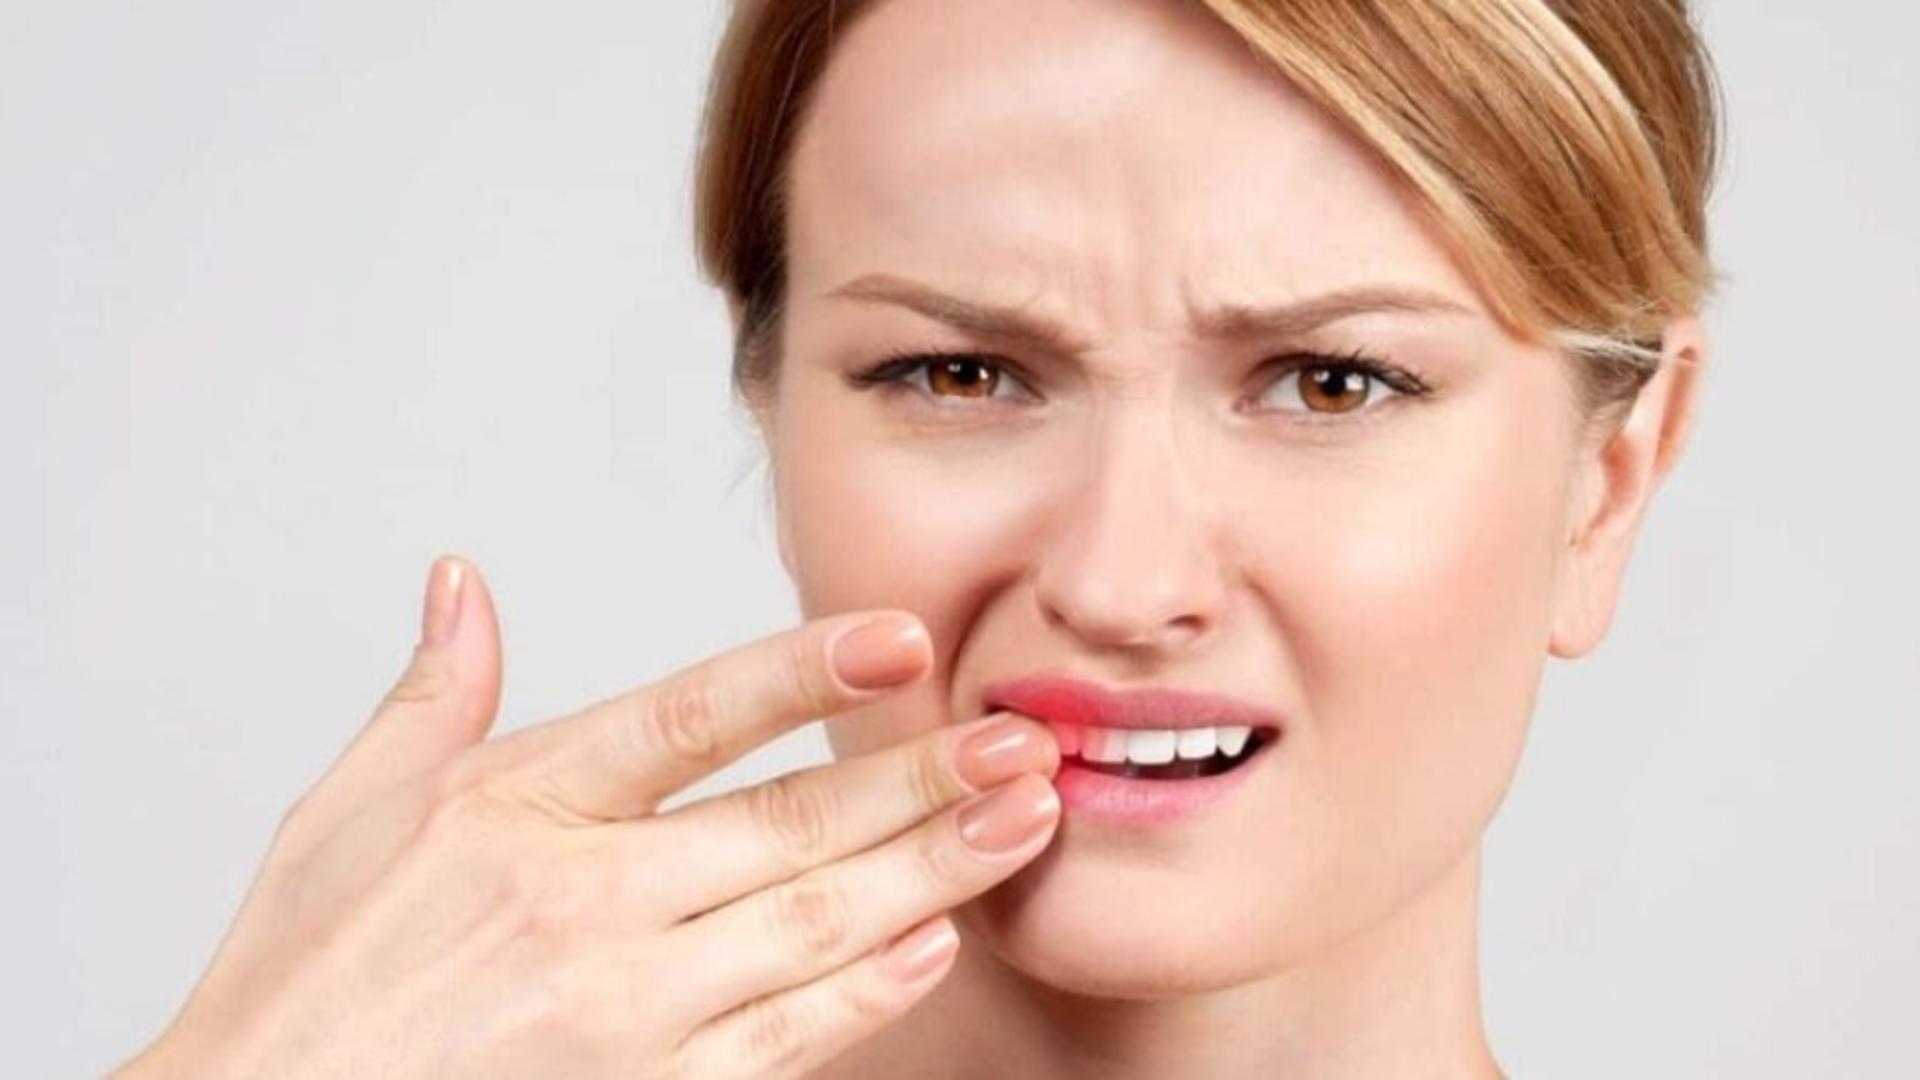 Cum scapi de durerea de dinţi, în doar 5 minute, cu un leac 100% natural. Soluția la îndemână care te scoate din bucluc până ajungi la dentist